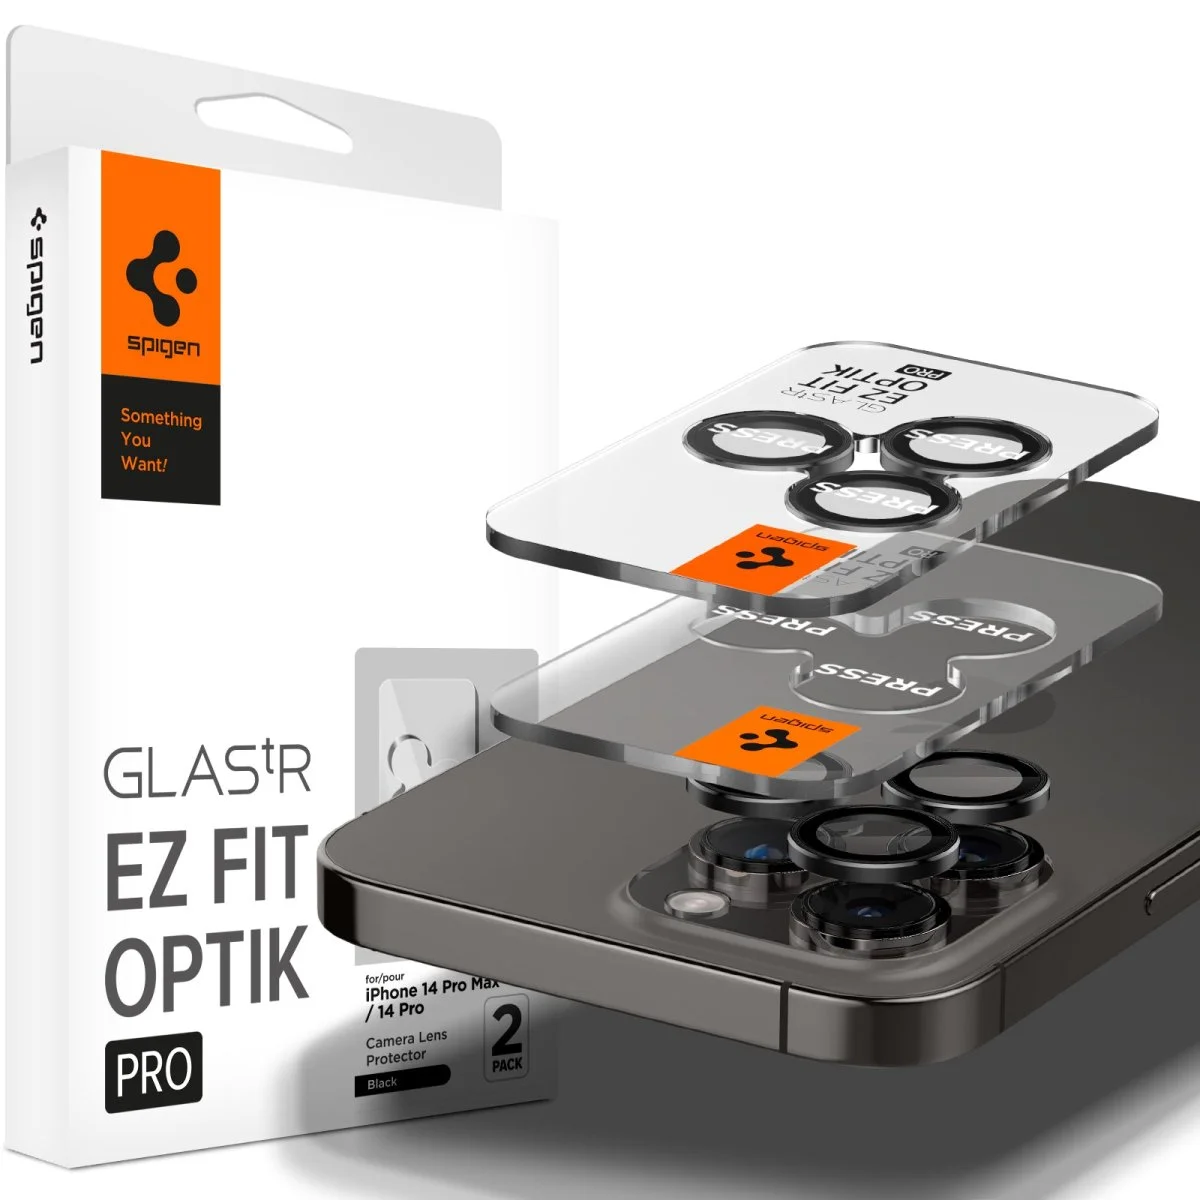 Spigen GLAStR EZ FIT Optik PRO 2-Pack iPhone 14 Pro, 14 Pro Max, 15 Pro, 15 Pro Max - Black